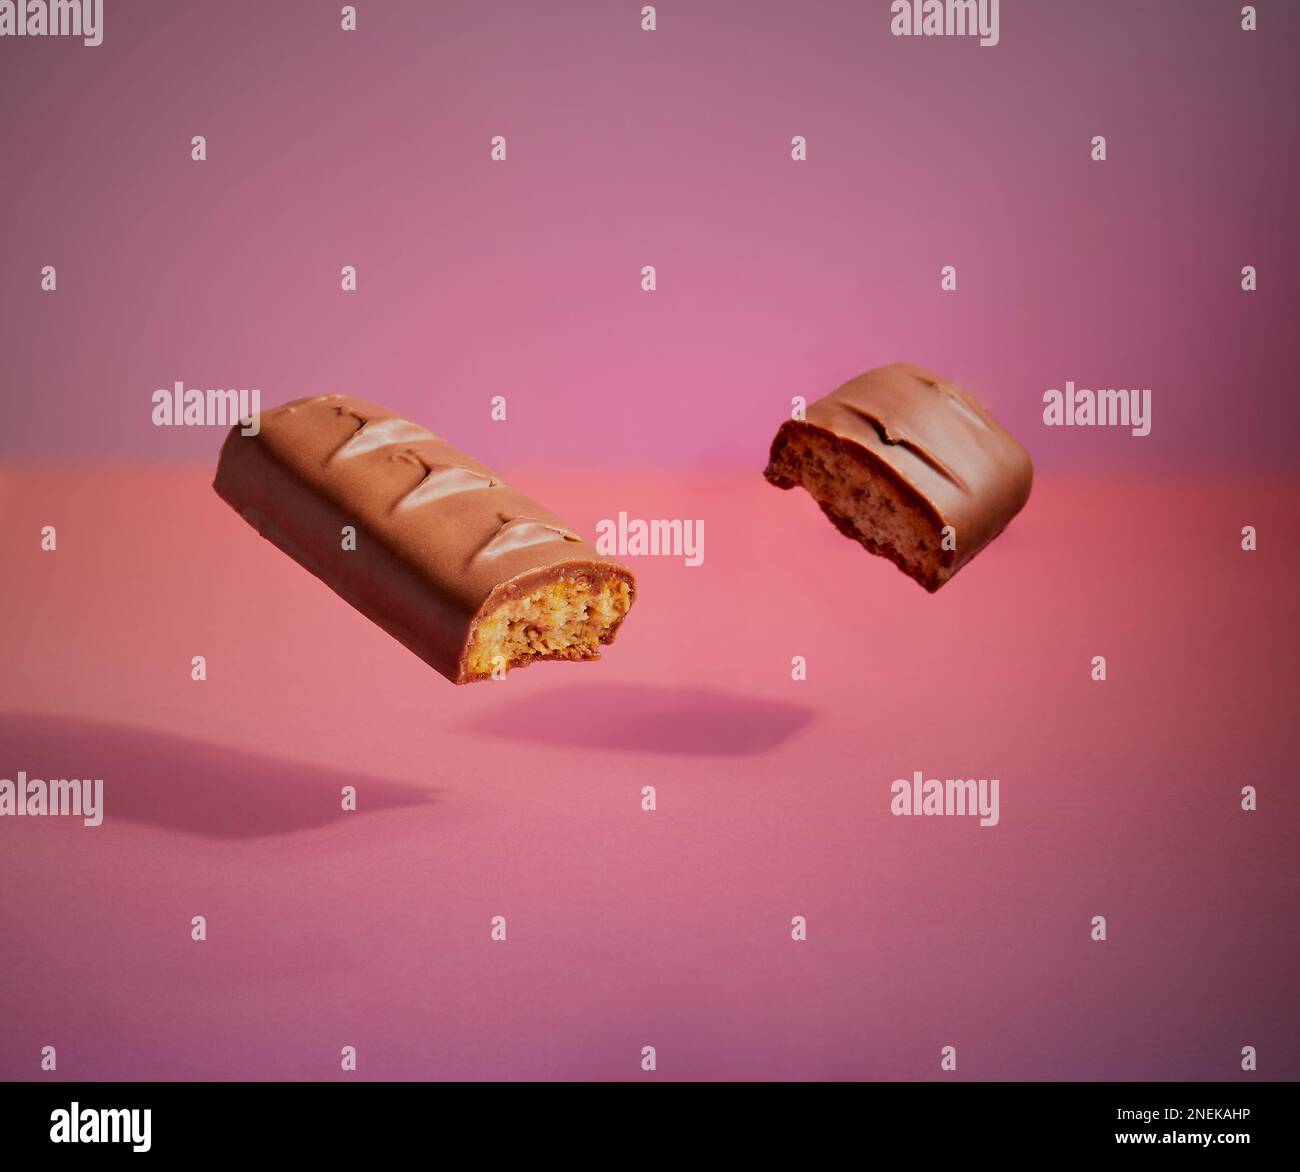 Ein Stück Schokolade schwebt in der Luft mit einem Schatten darunter und einem schönen abgestuften Hintergrund. Stockfoto